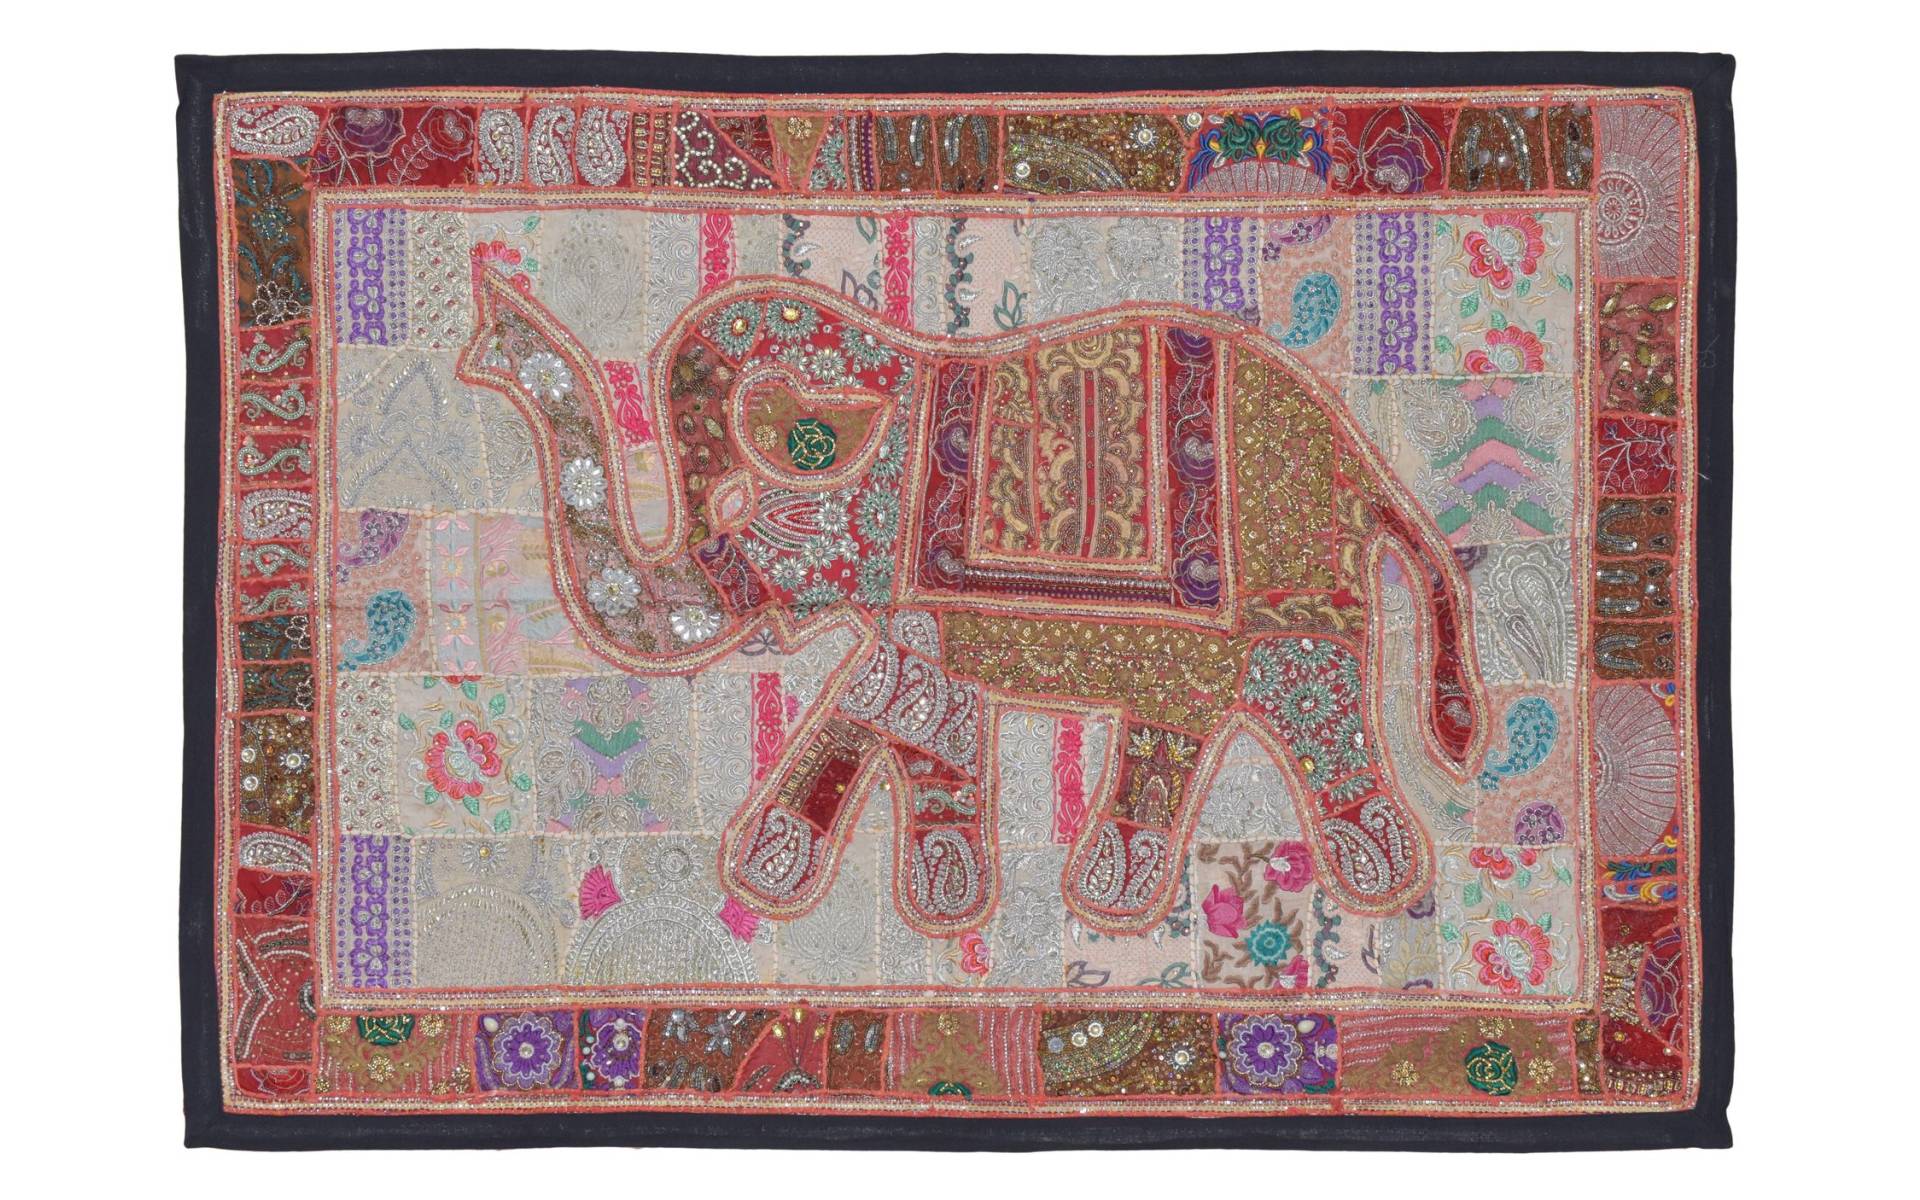 Patchworková tapiséria z Rajastanu, ručné práce, vínový slon, 148x104cm